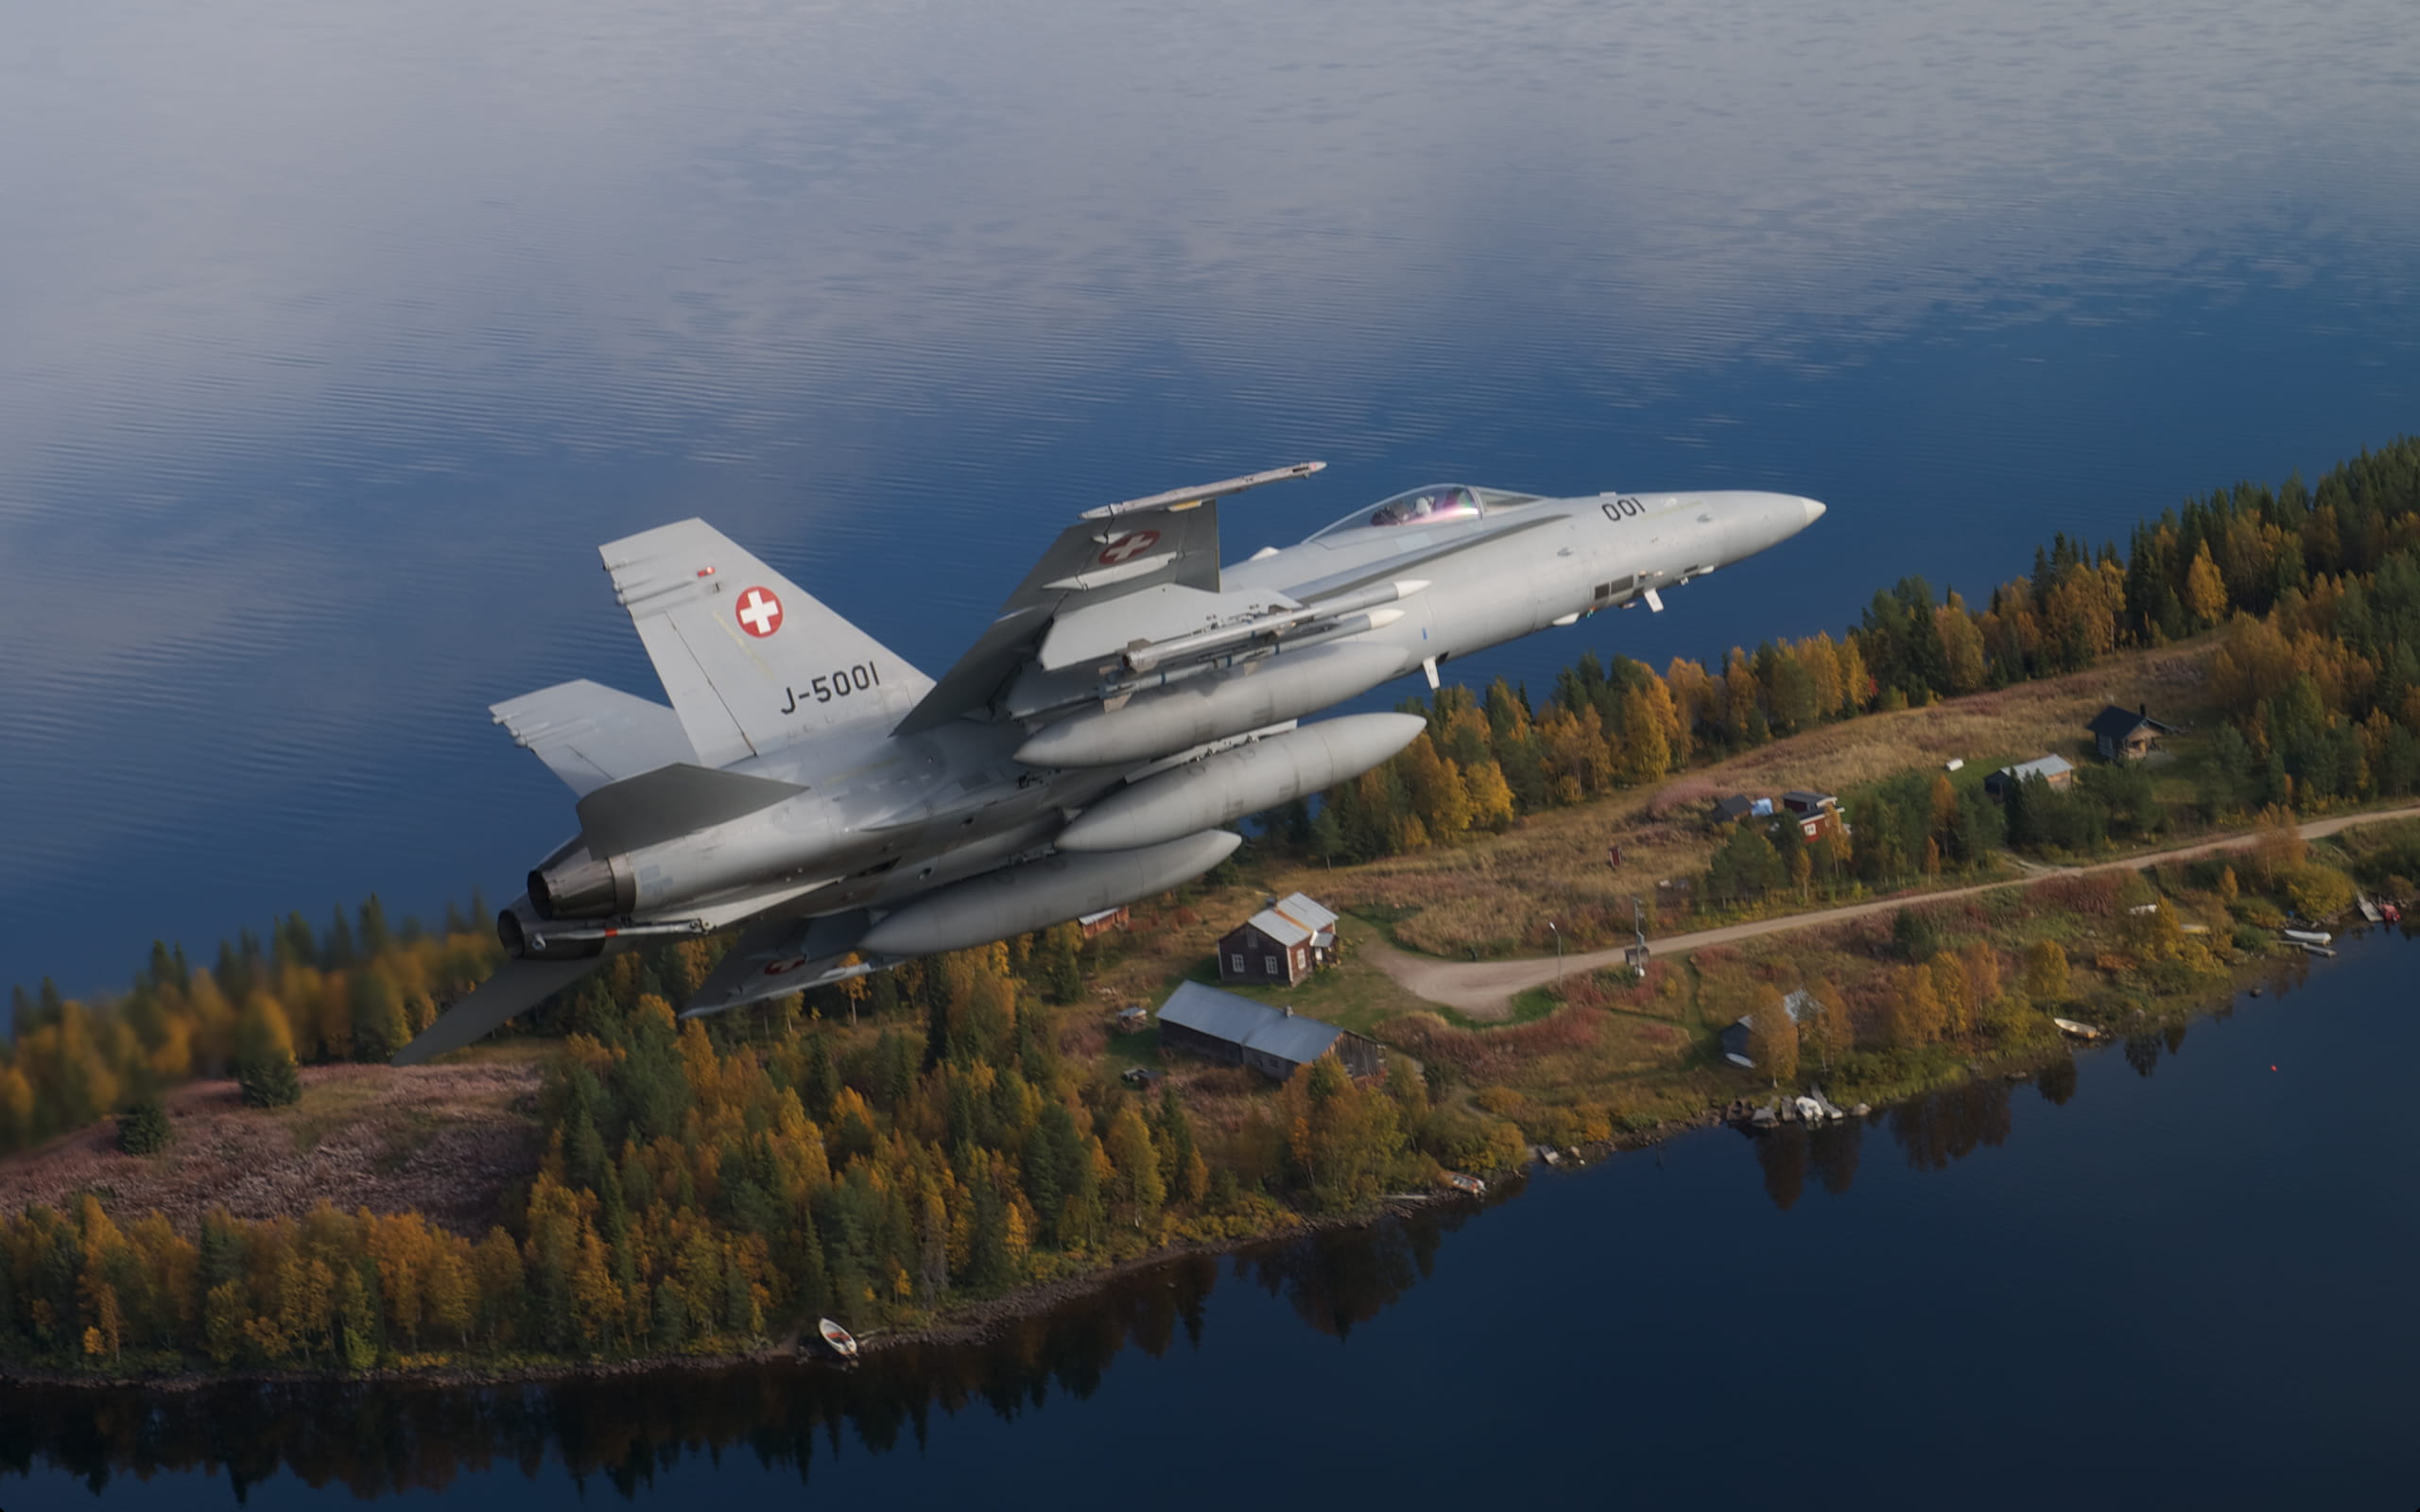 スウェーデンで実施された多国間軍事演習トールハンマーにて、F-18戦闘機からAIM-120C7 AMRAAMミサイルを発射するスイス軍。4カ国の軍のリーダーが協力し、5発のAMRAAMミサイル実射試験に成功。